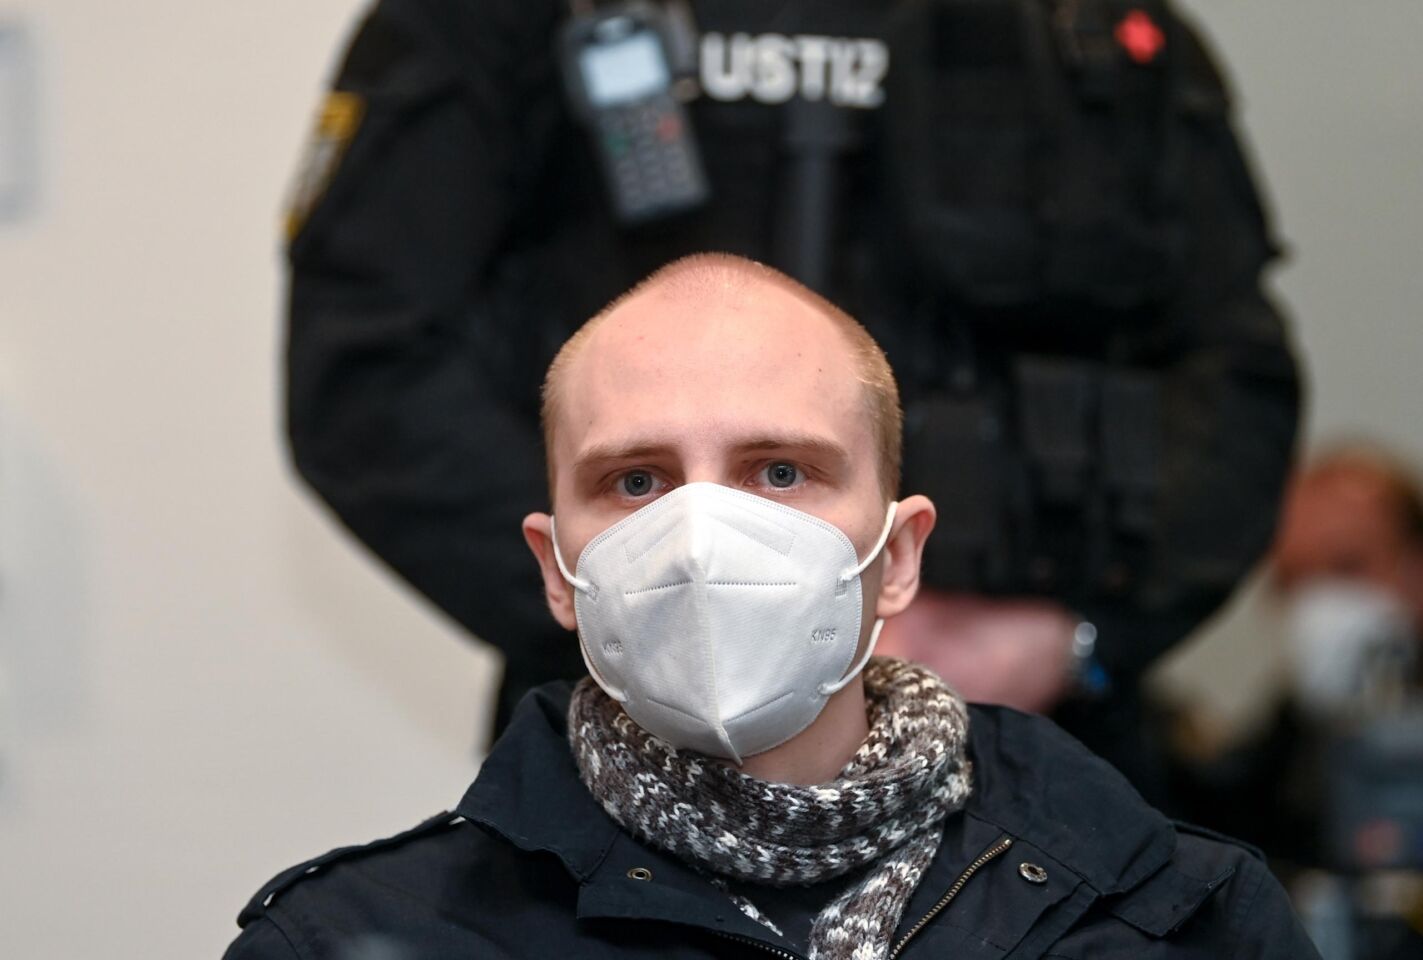 Geiselnahme: Halle-Attentäter wollte Gefängnis verlassen